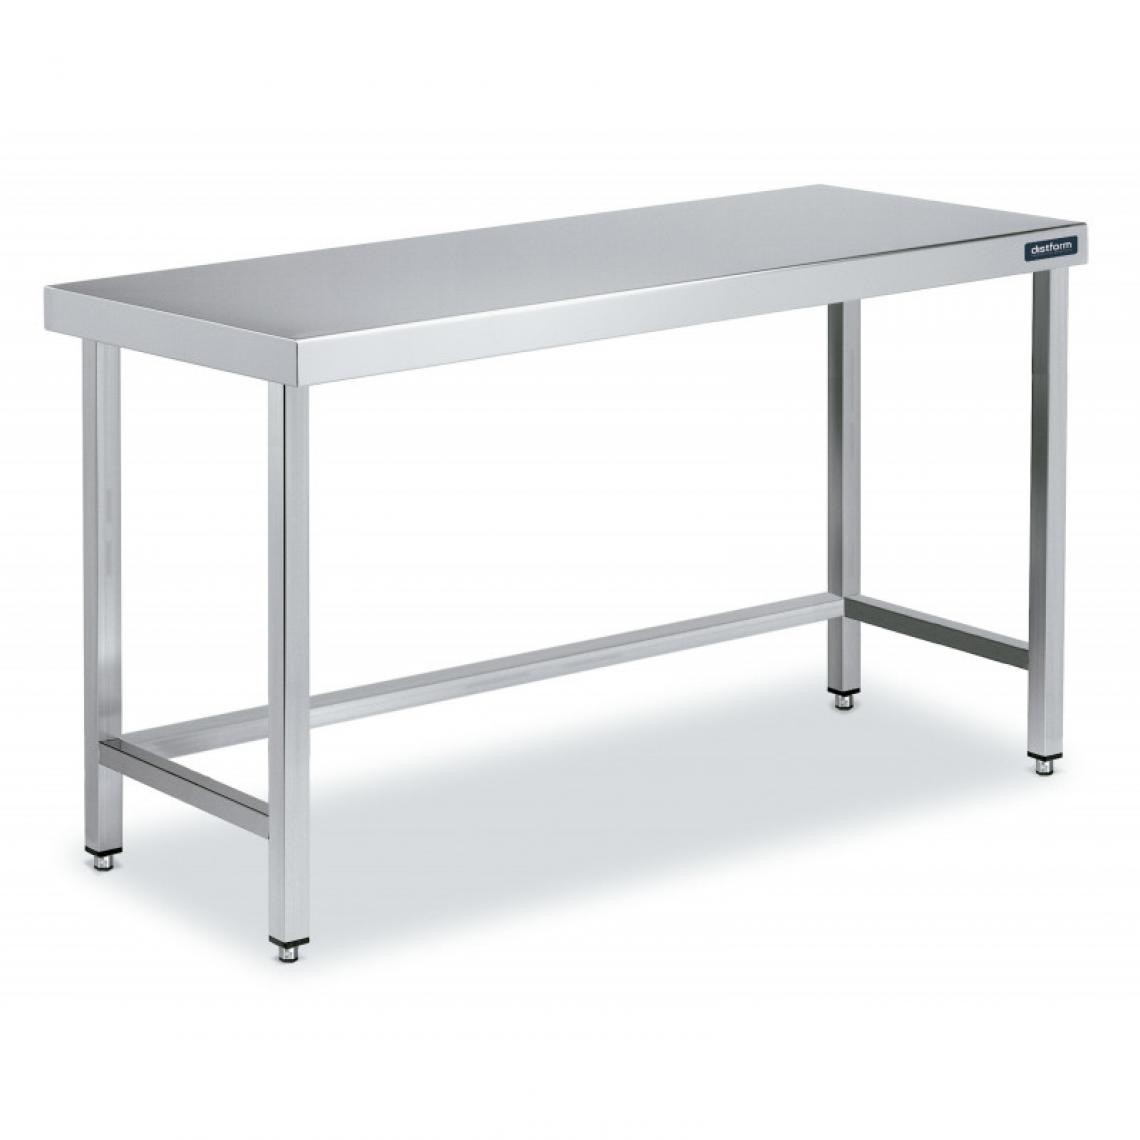 DISTFORM - Table Centrale en Inox avec renforts Profondeur 700 mm - Distform - Acier inoxydable1400x700 - Tables à manger